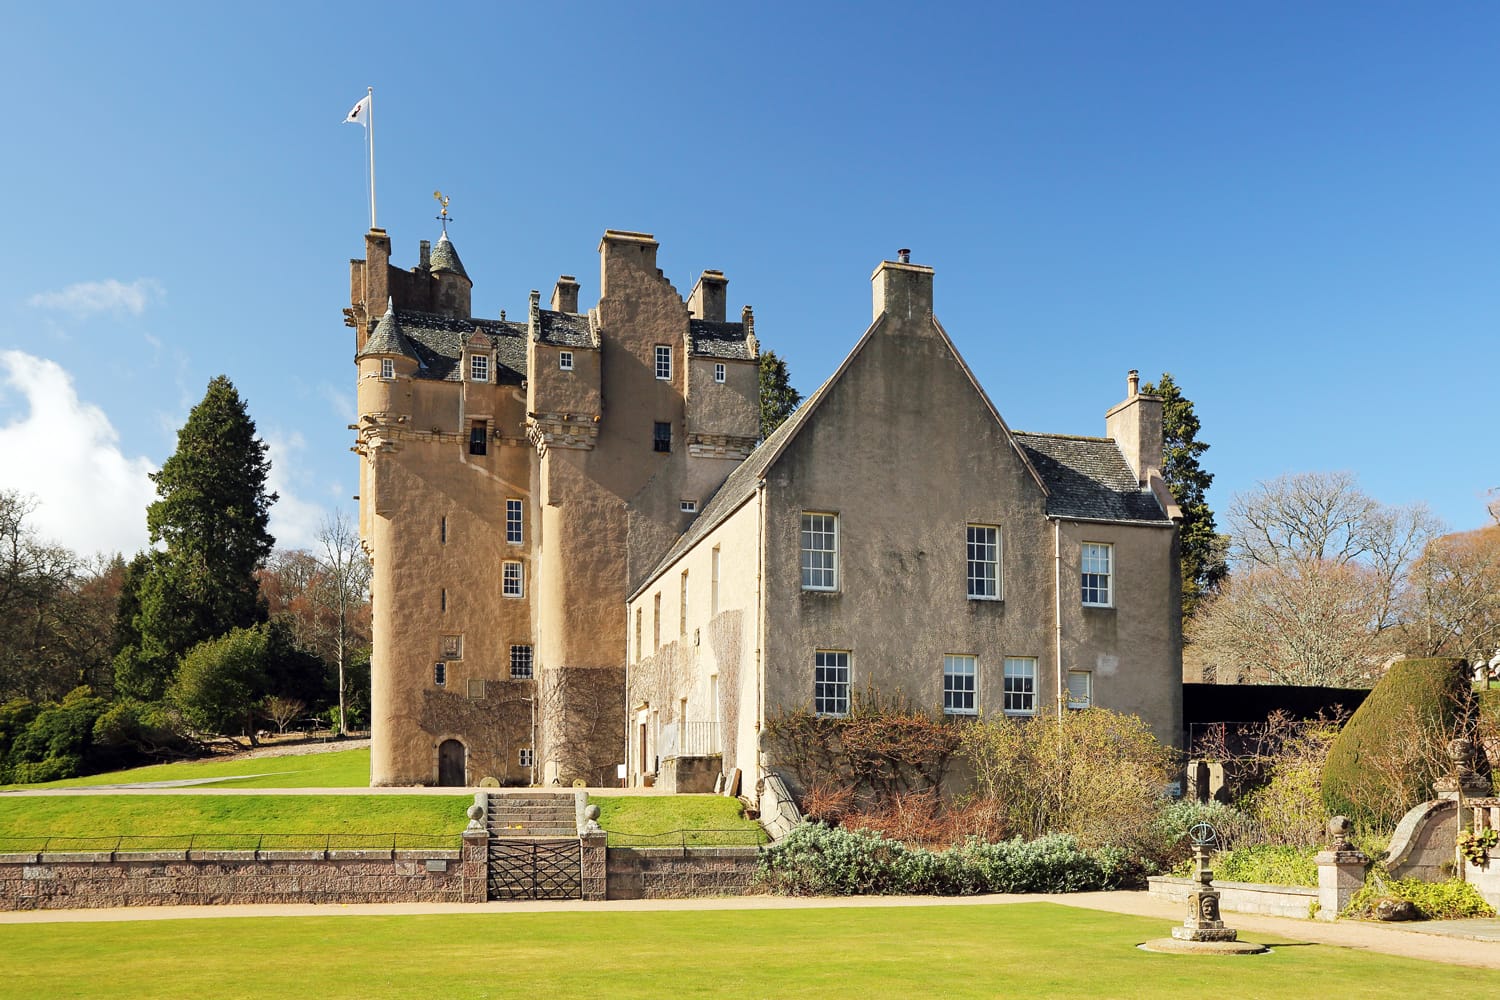 Κάστρο Crathes, ένα πυργόσπιτο του 16ου αιώνα που βρίσκεται στο Aberdeenshire της Σκωτίας